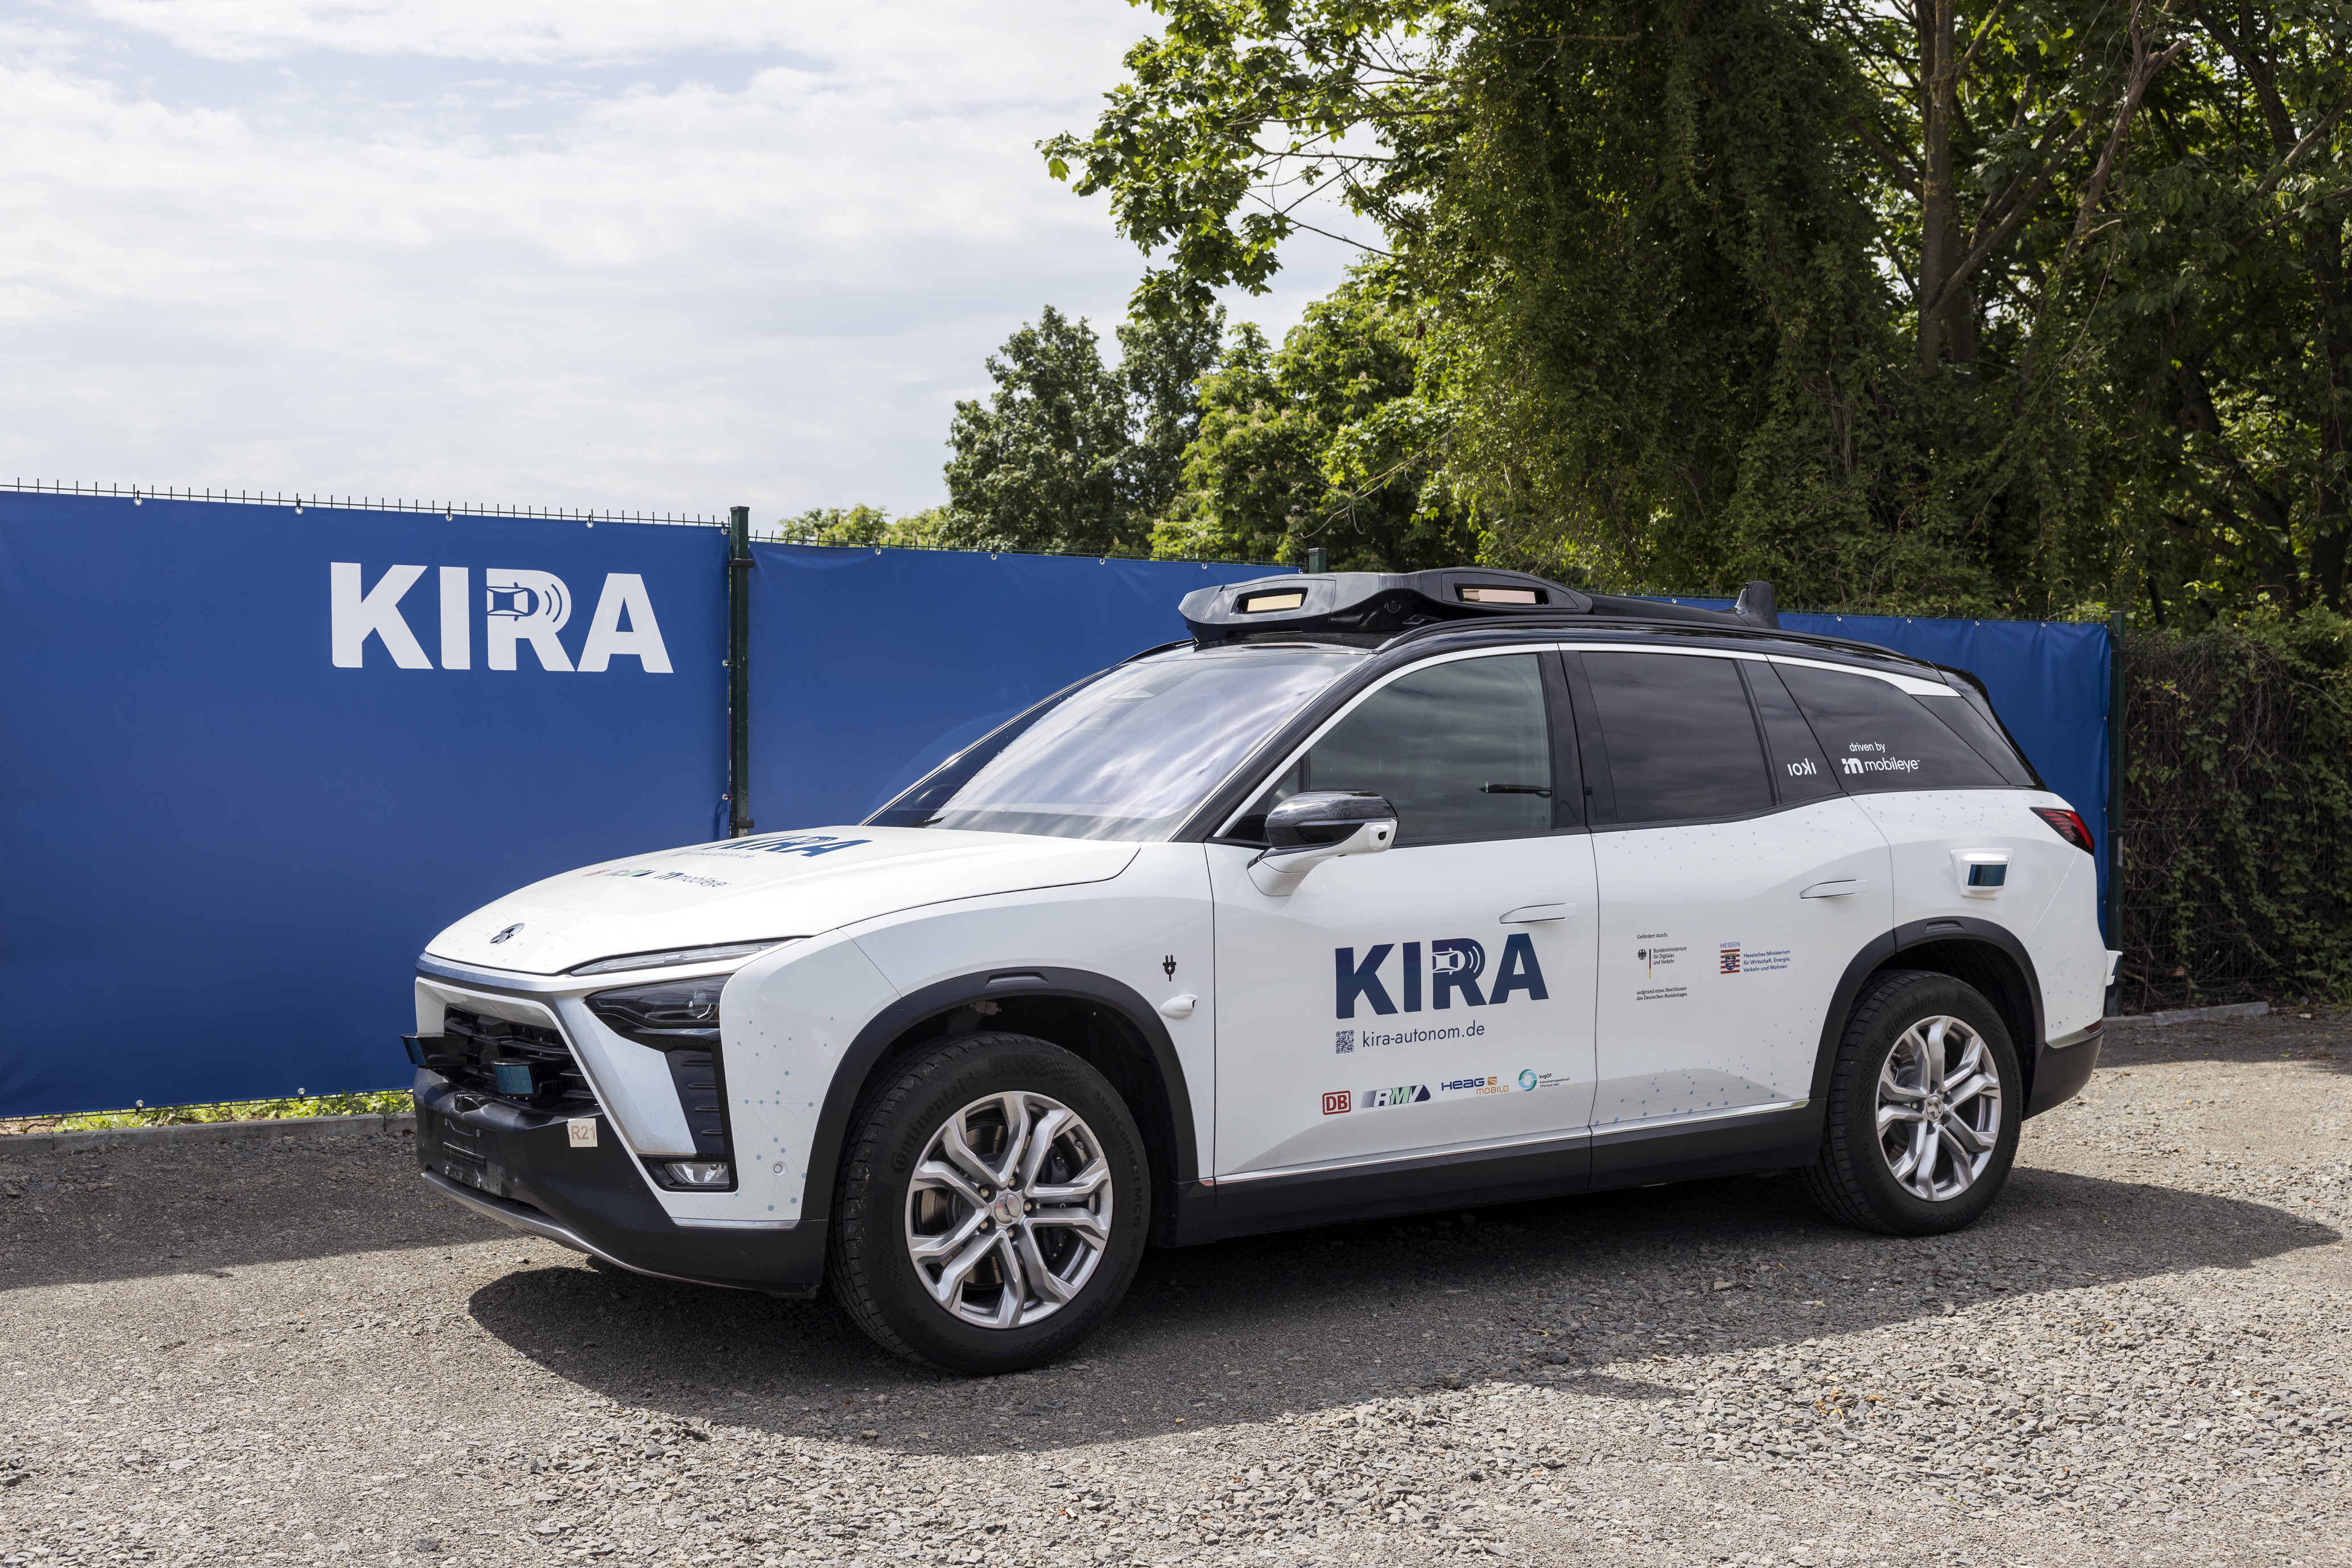 Lancement du projet pionnier KIRA avec des véhicules autonomes pour le transport public